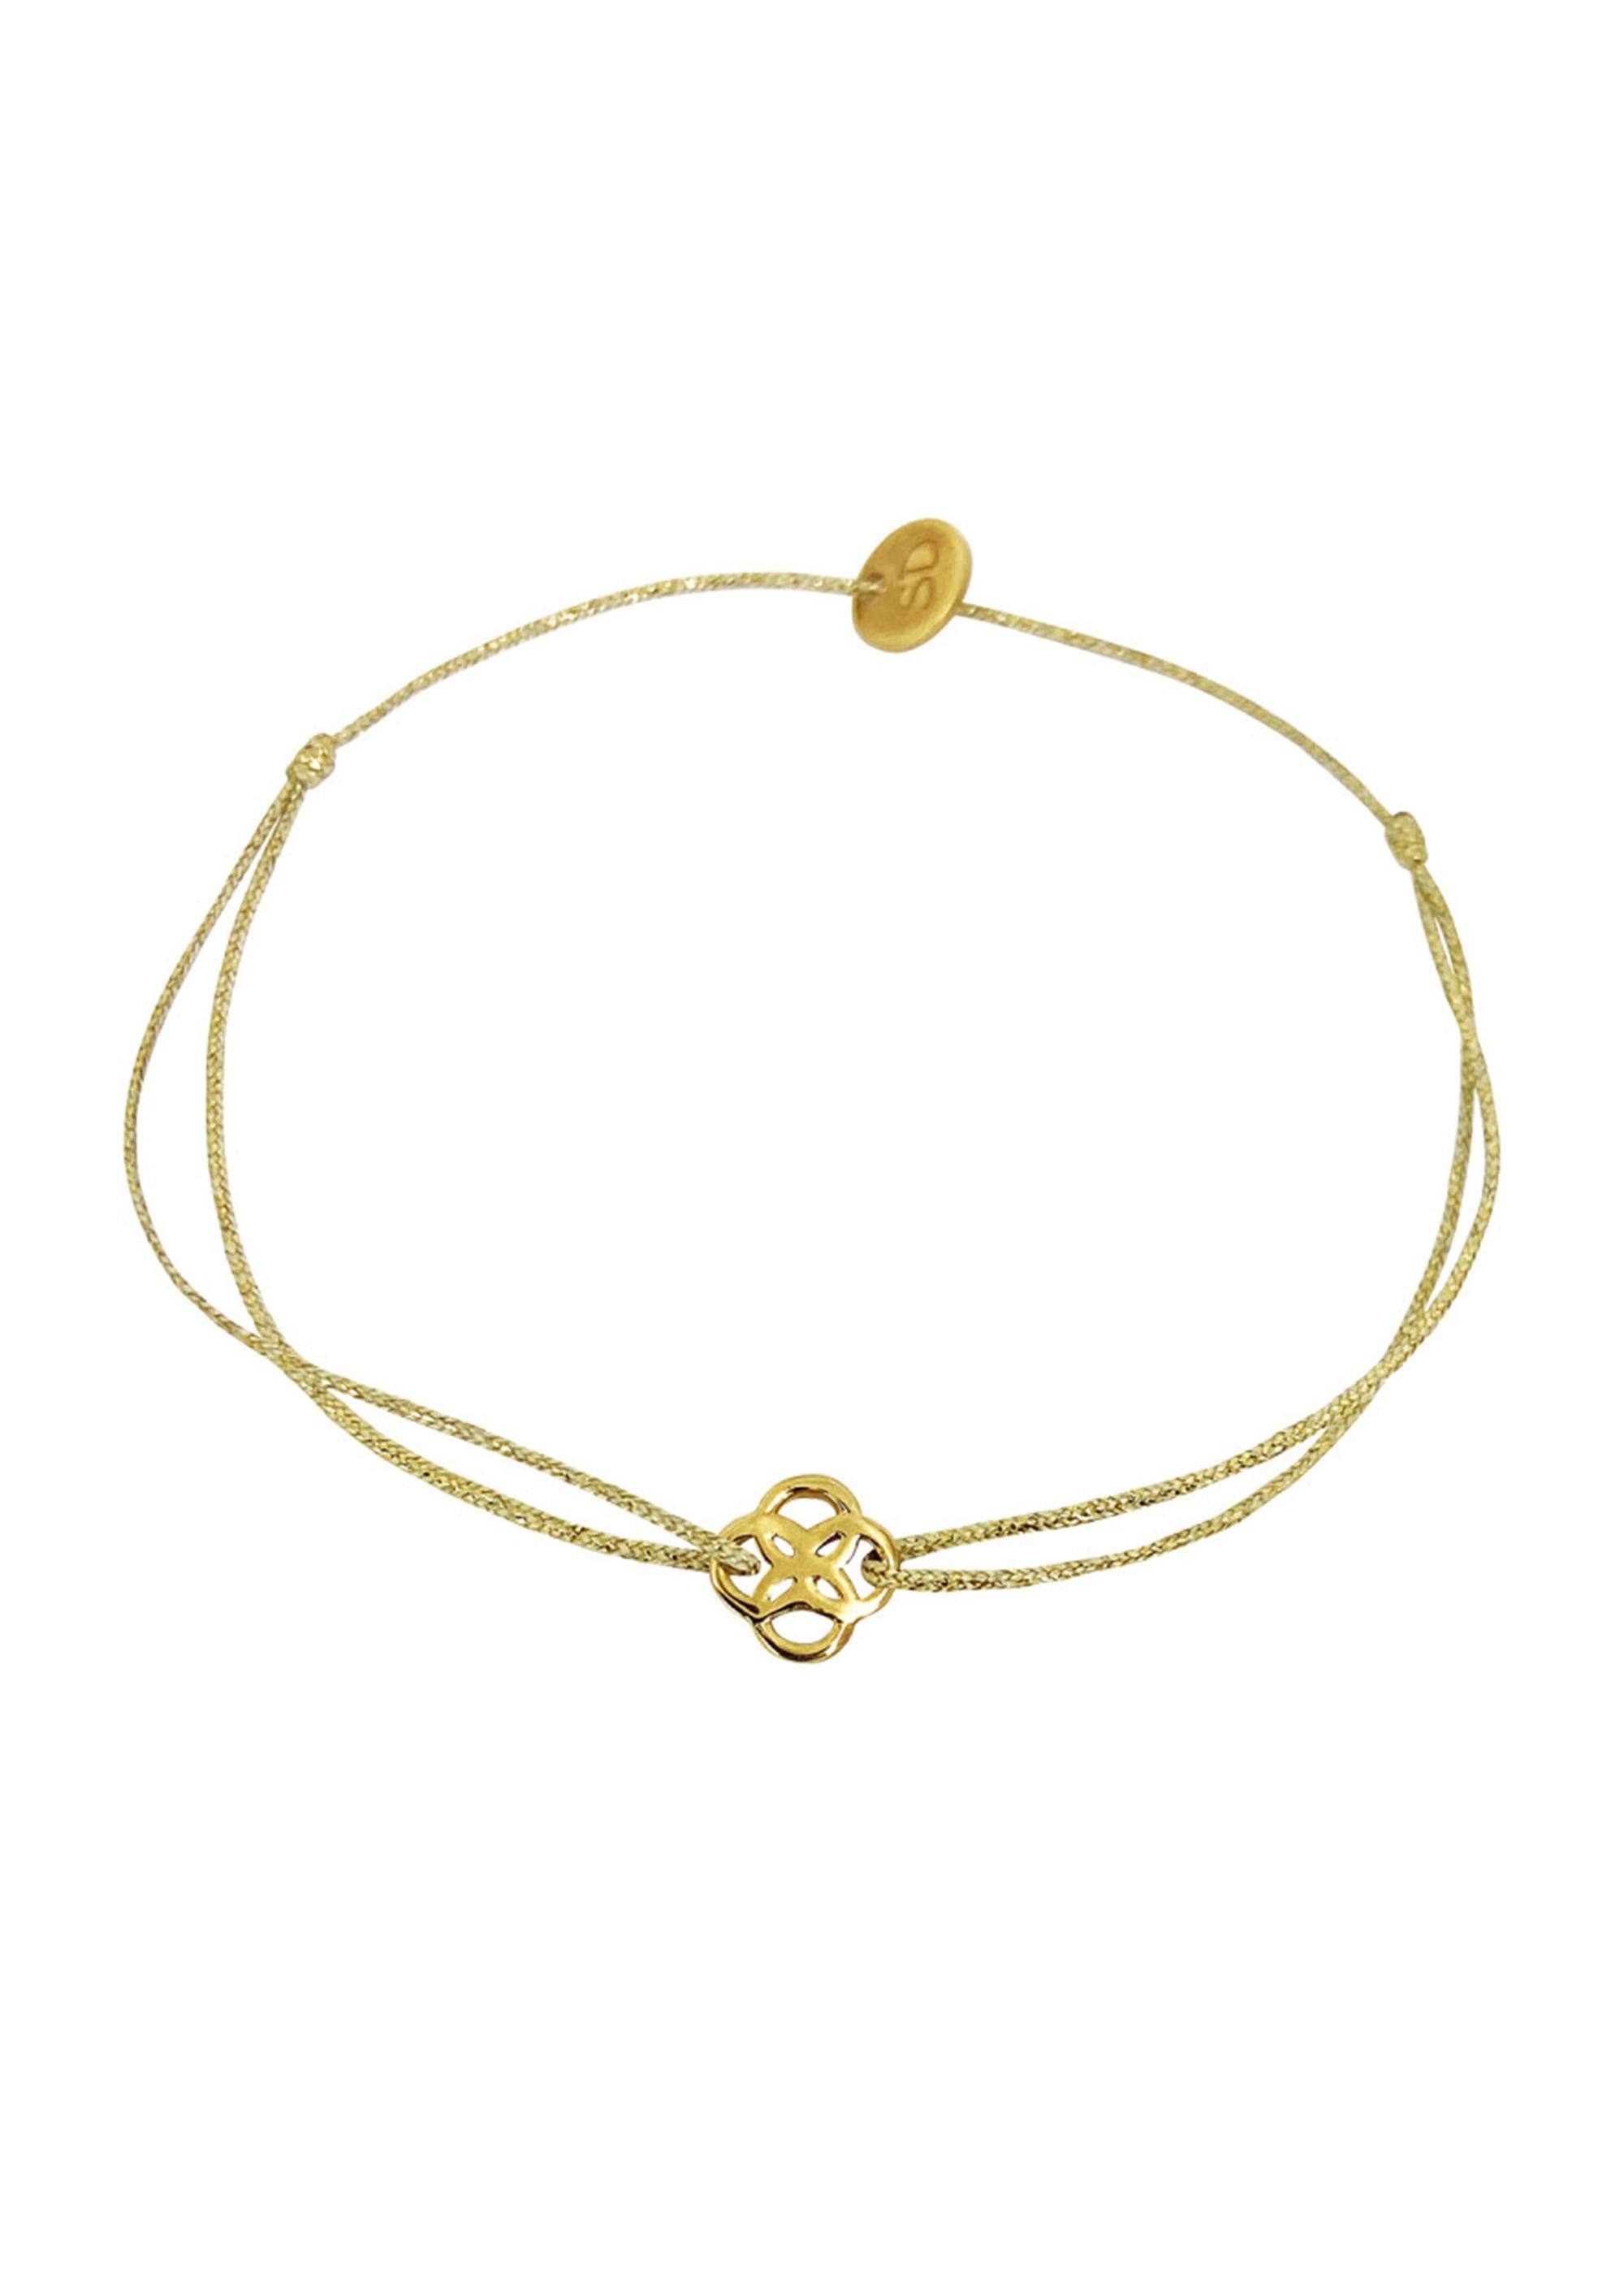 Sophie Deschamps  |  Trefle Bracelet, Gold or Rose Gold